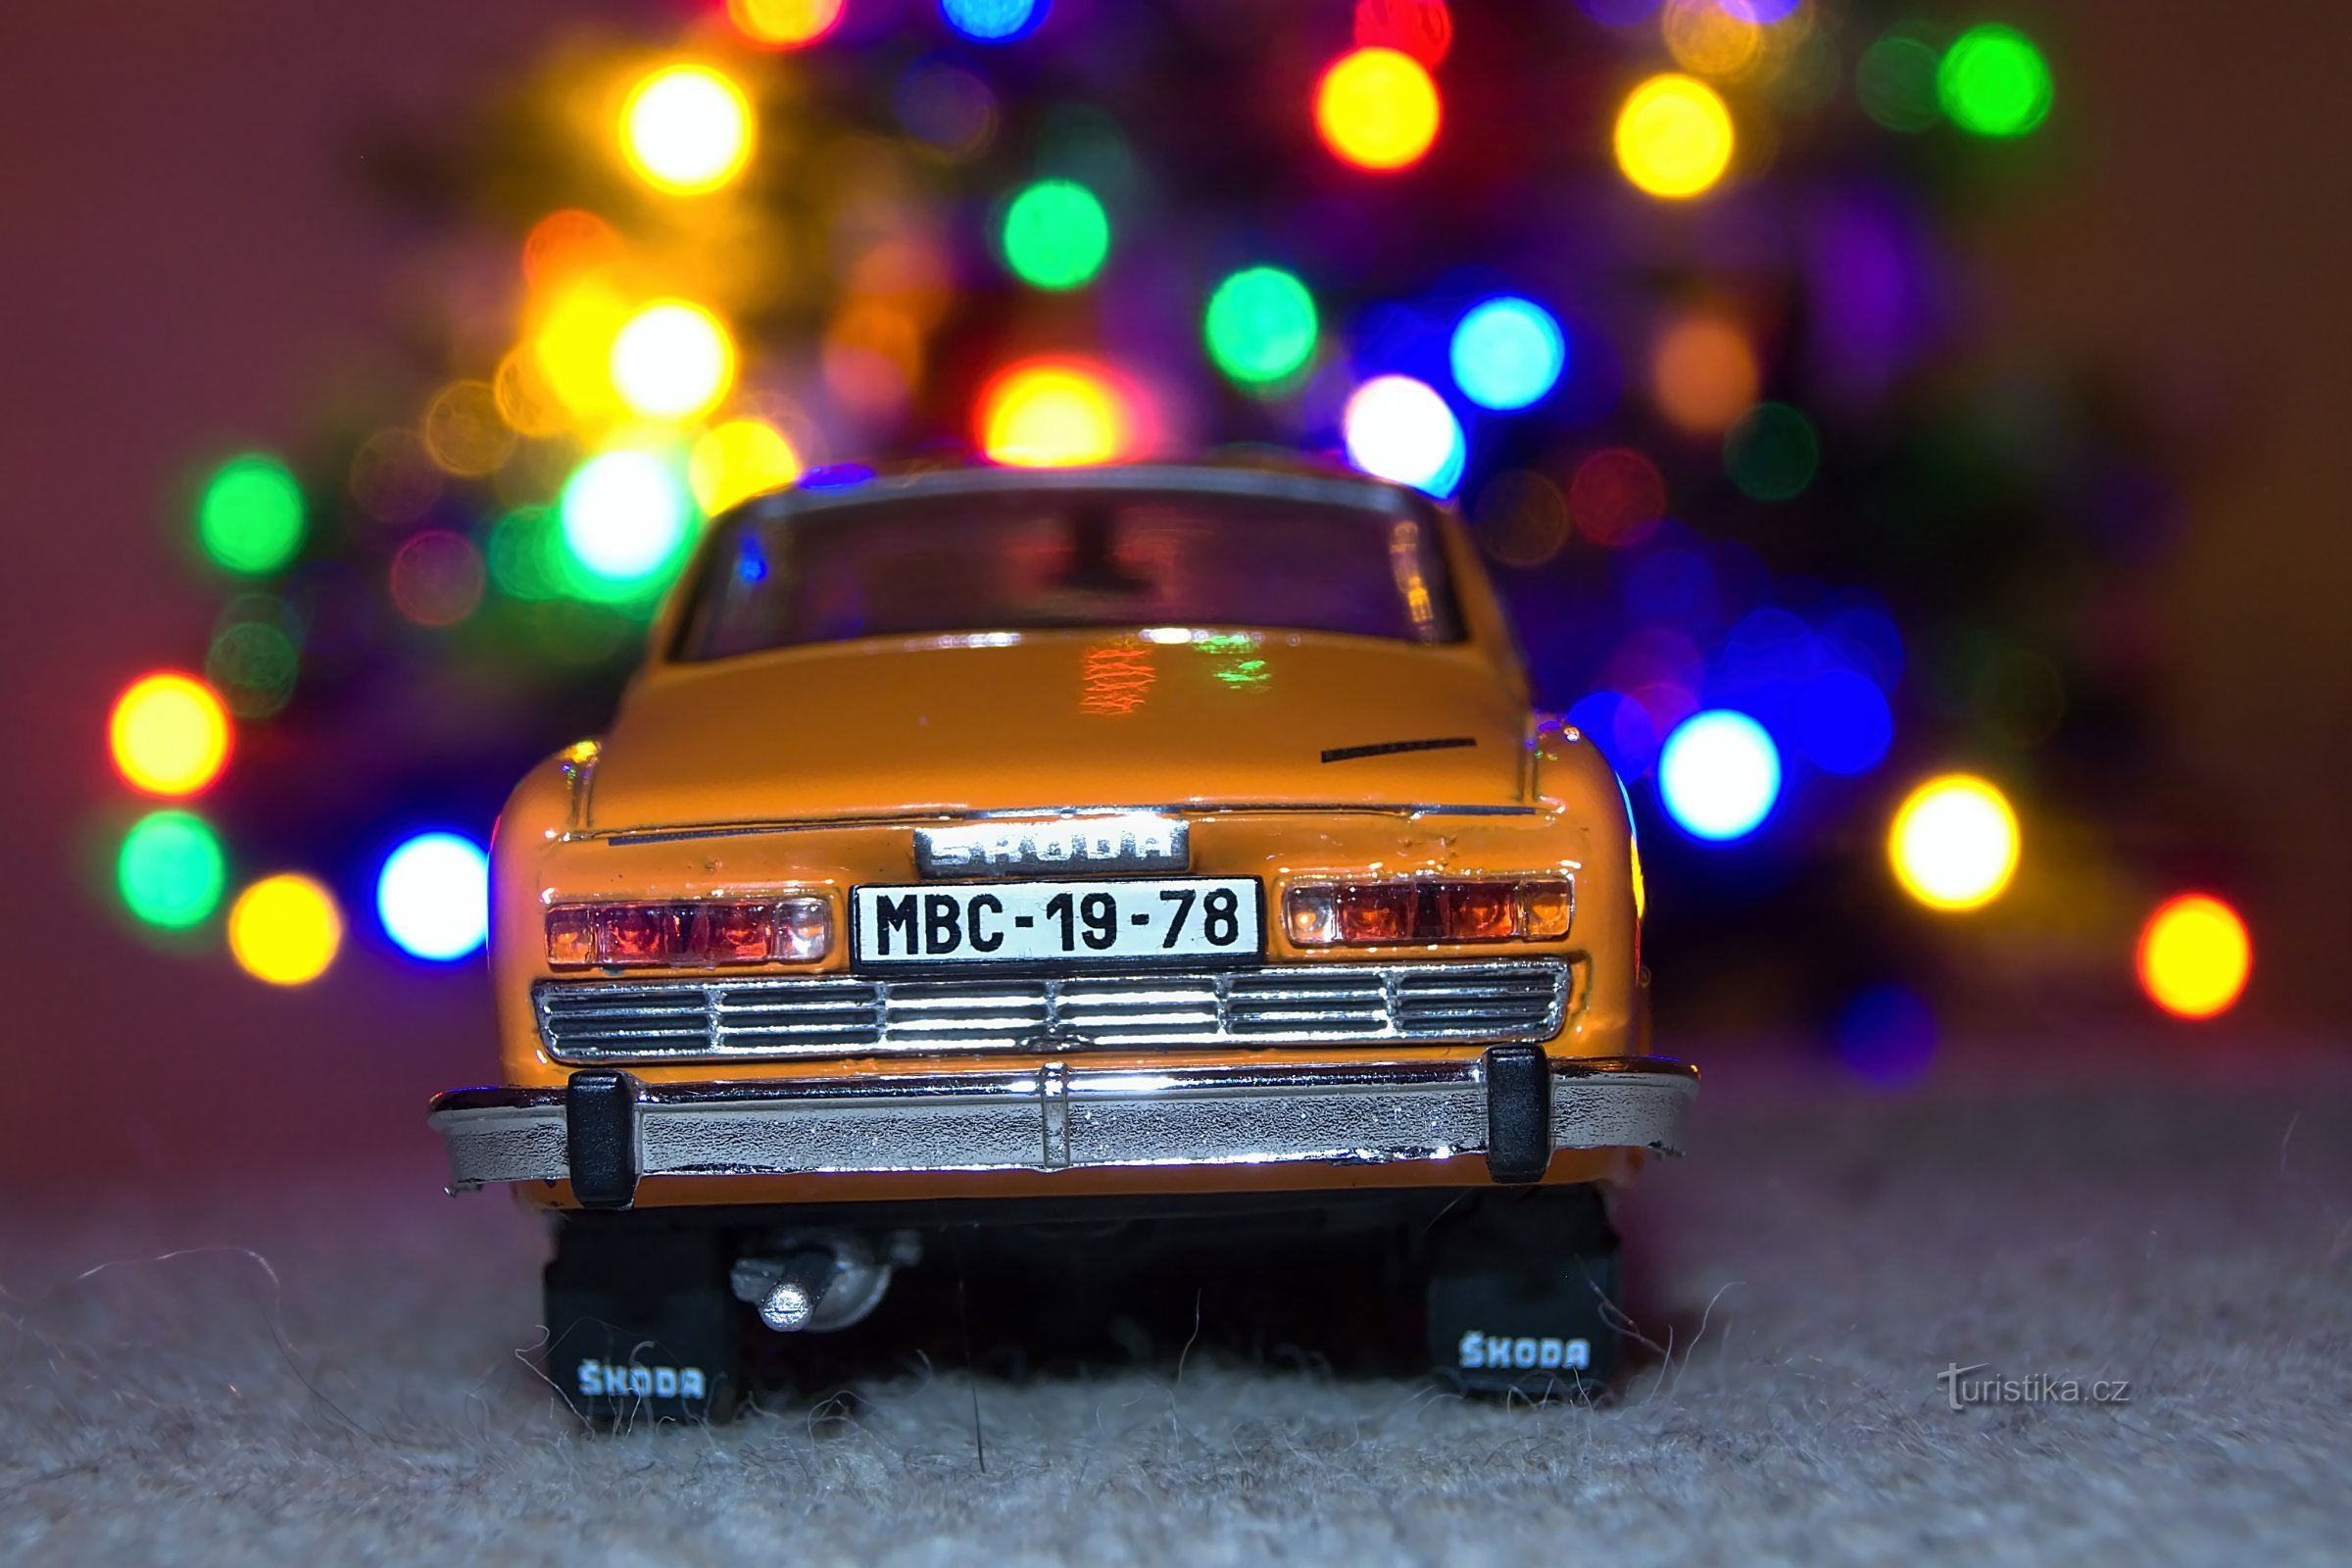 Škoda 110R auf einem Hocker am Weihnachtsbaum.